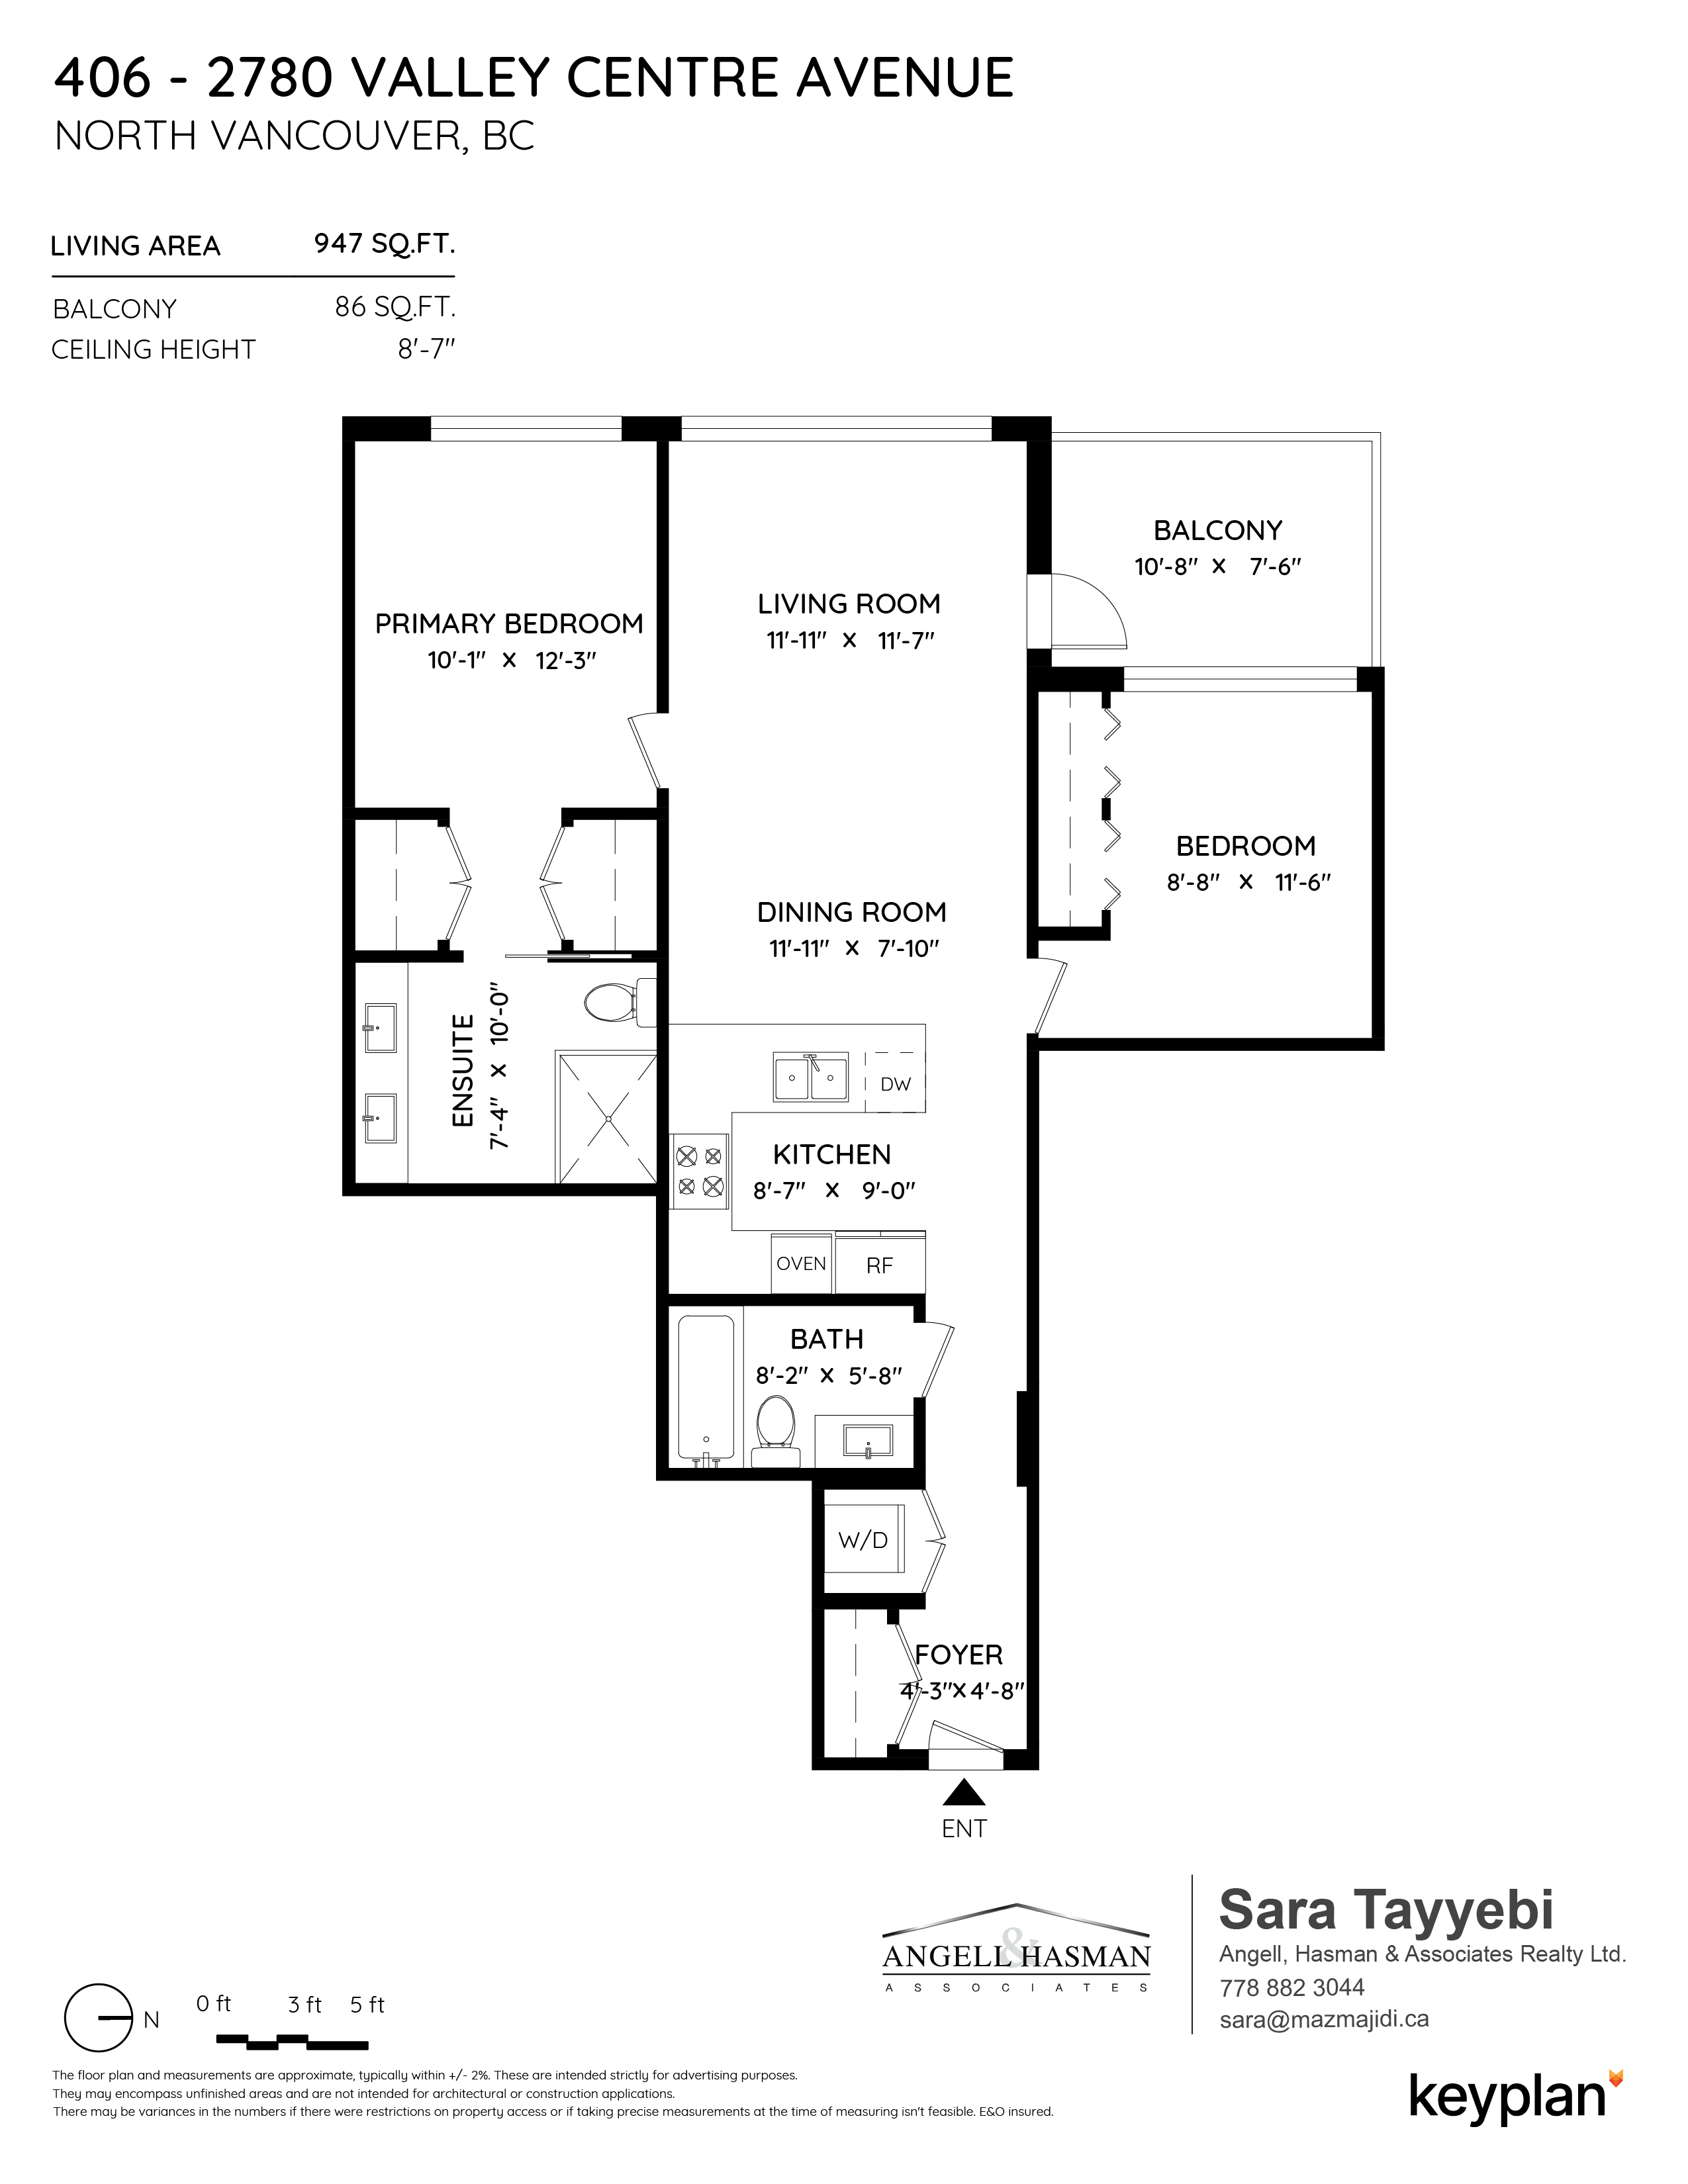 Sara Tayyebi - Unit 406 - 2780 Valley Centre Avenue, North Vancouver, BC, Canada | Floor Plan 1